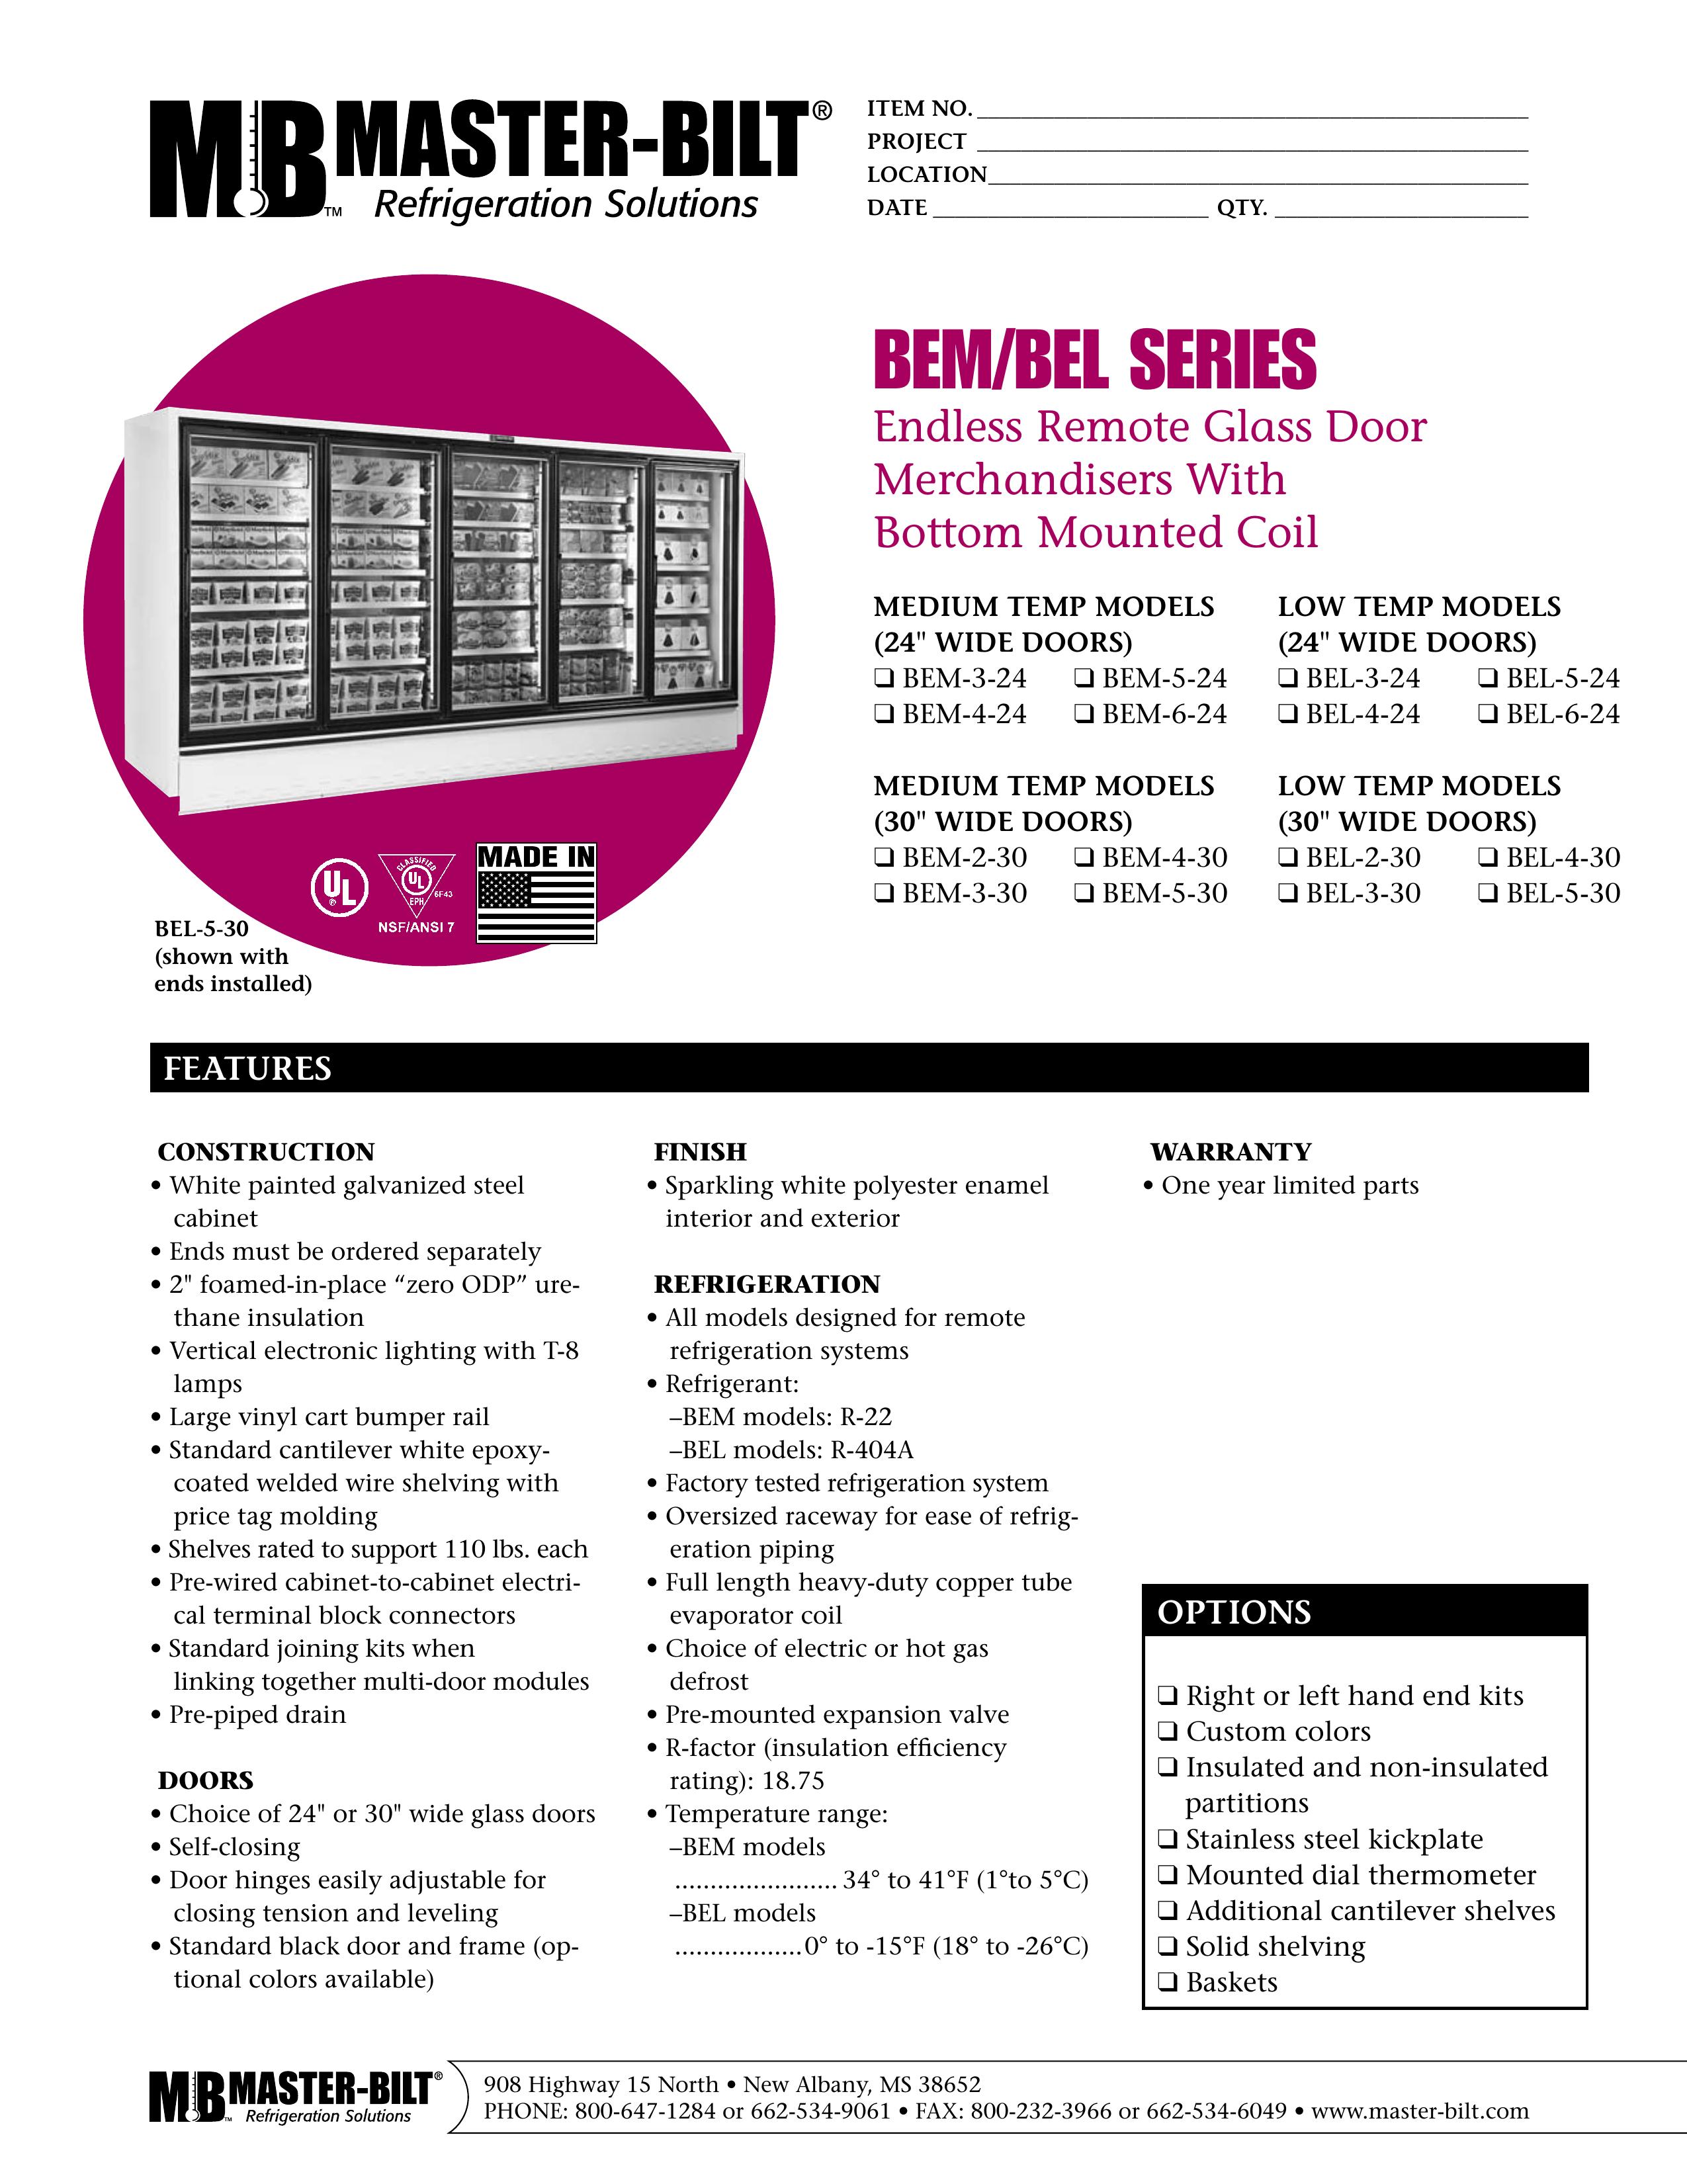 Master Bilt BEL-4-24 Refrigerator User Manual